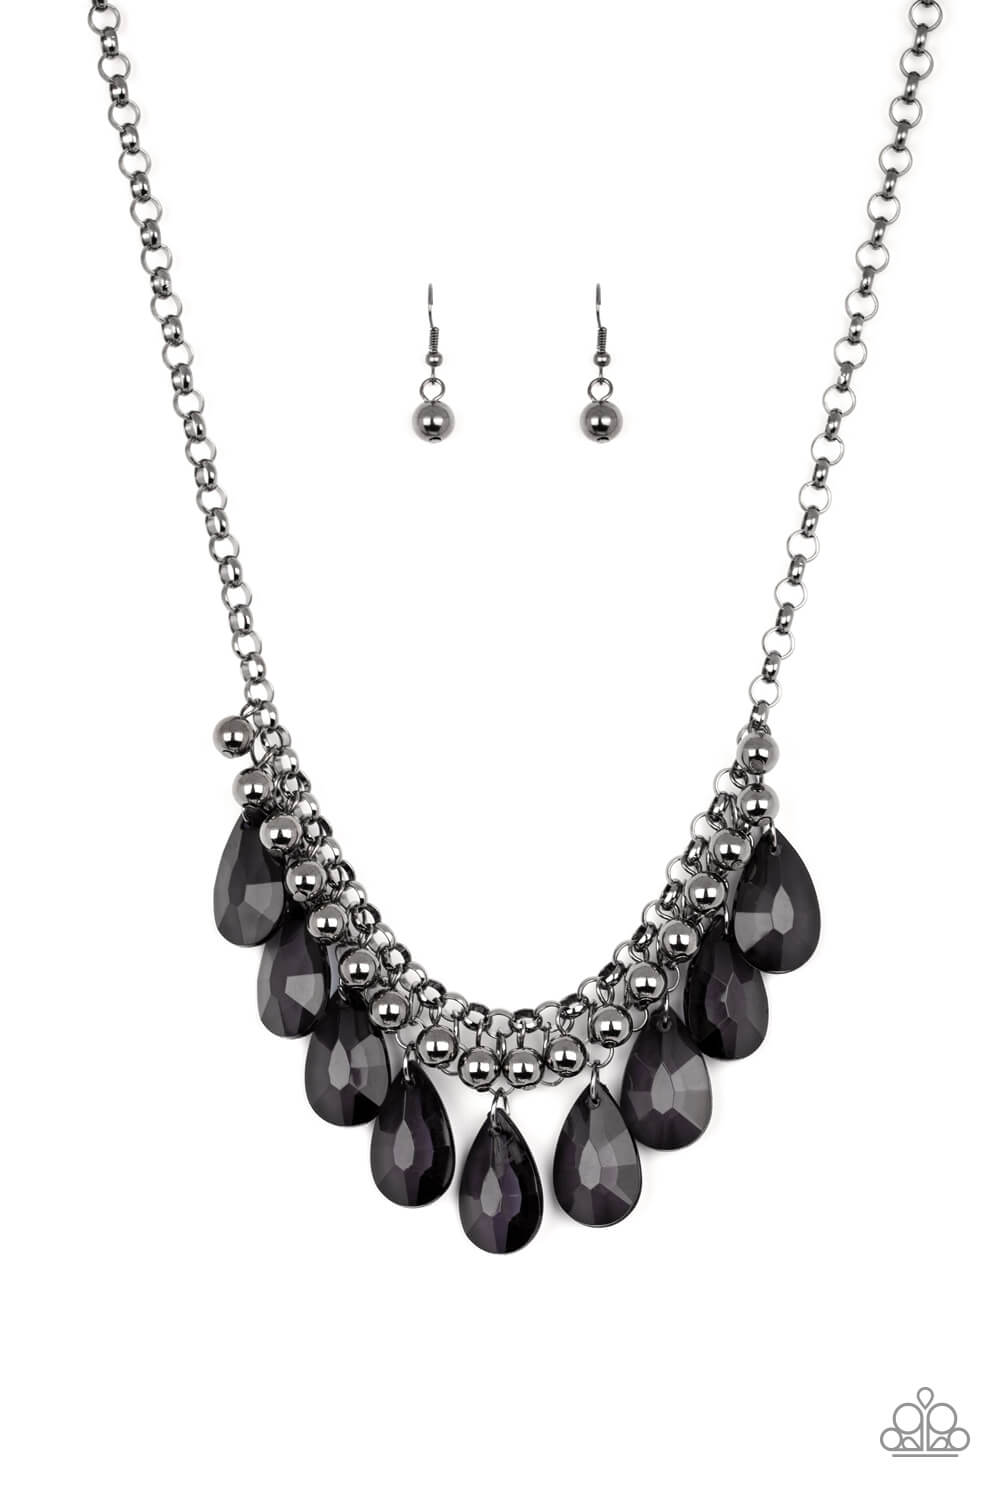 Fashionista Flair - Black Necklace Set - Princess Glam Shop